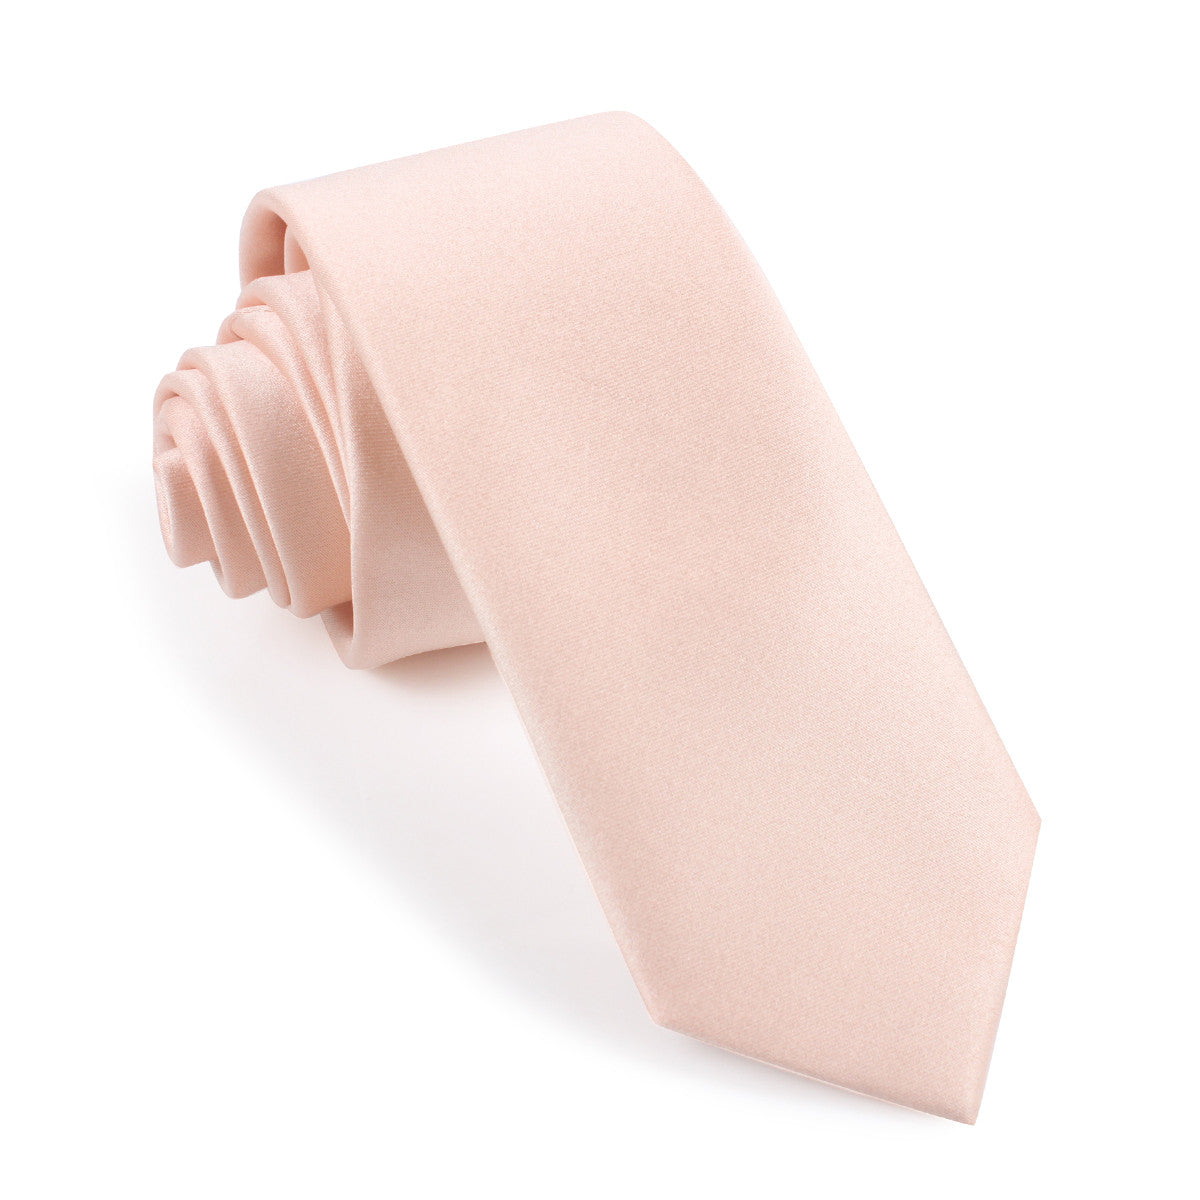 Peach Satin Skinny Tie | Pink Slim Thin Narrow Ties Neckties Australia ...